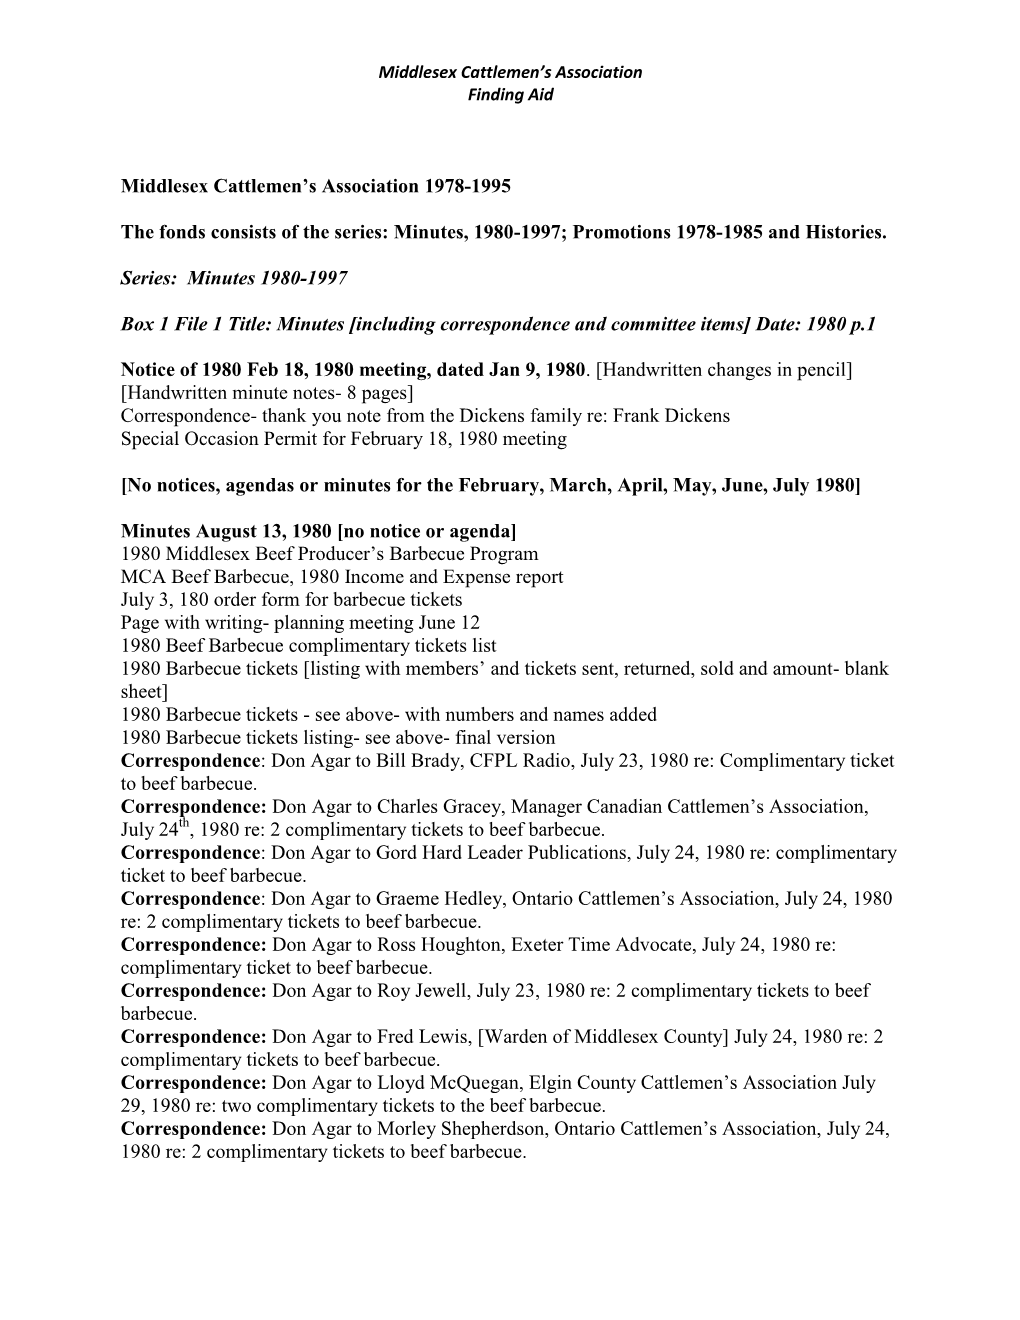 Middlesex Cattlemen's Association 1978-1995 the Fonds